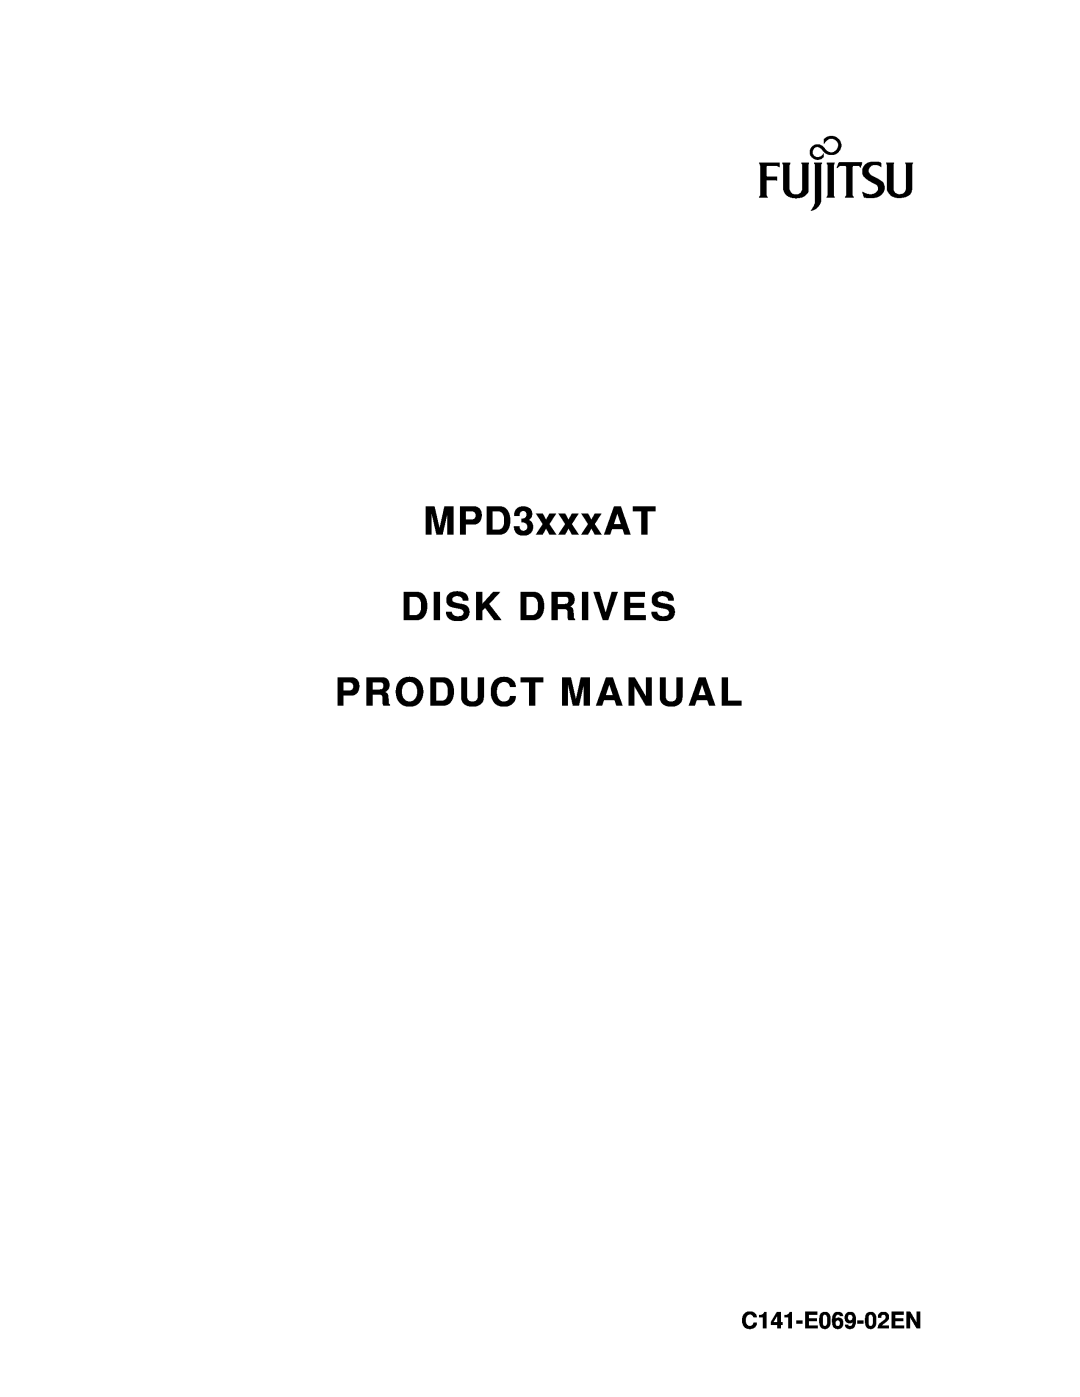 Fujitsu MPD3XXXAT manual MPD3xxxAT DISK DRIVES PRODUCT MANUAL, C141-E069-02EN 